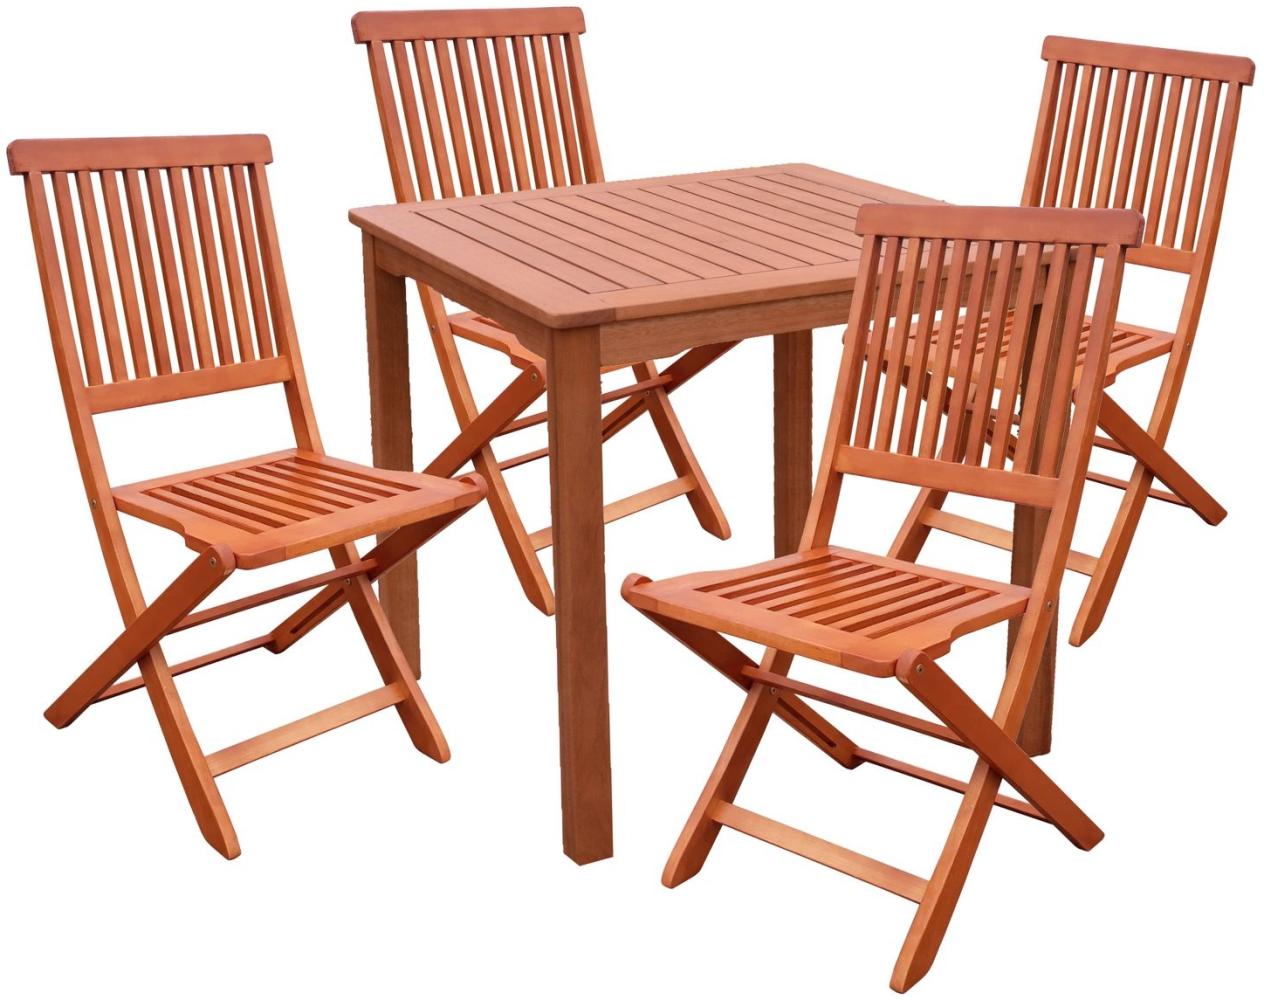 3tlg. Holz Tischgruppe Gartenmöbel Gartentisch Stuhl Garten Hochlehner Tisch Bild 1